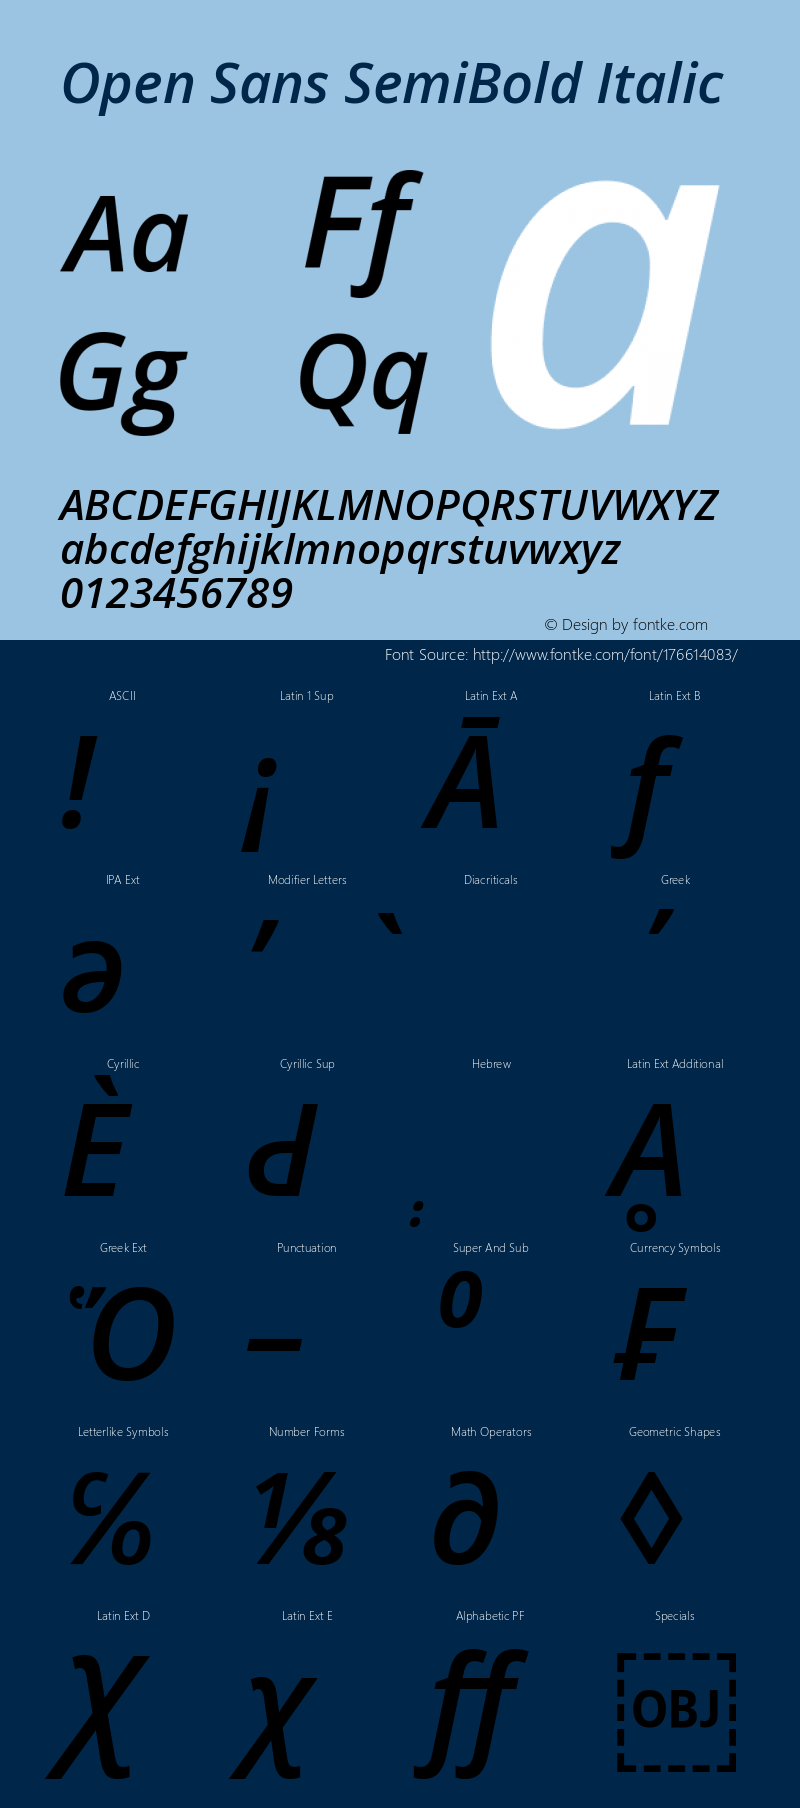 Open Sans SemiBold Italic Version 3.000; ttfautohint (v1.8.3)图片样张